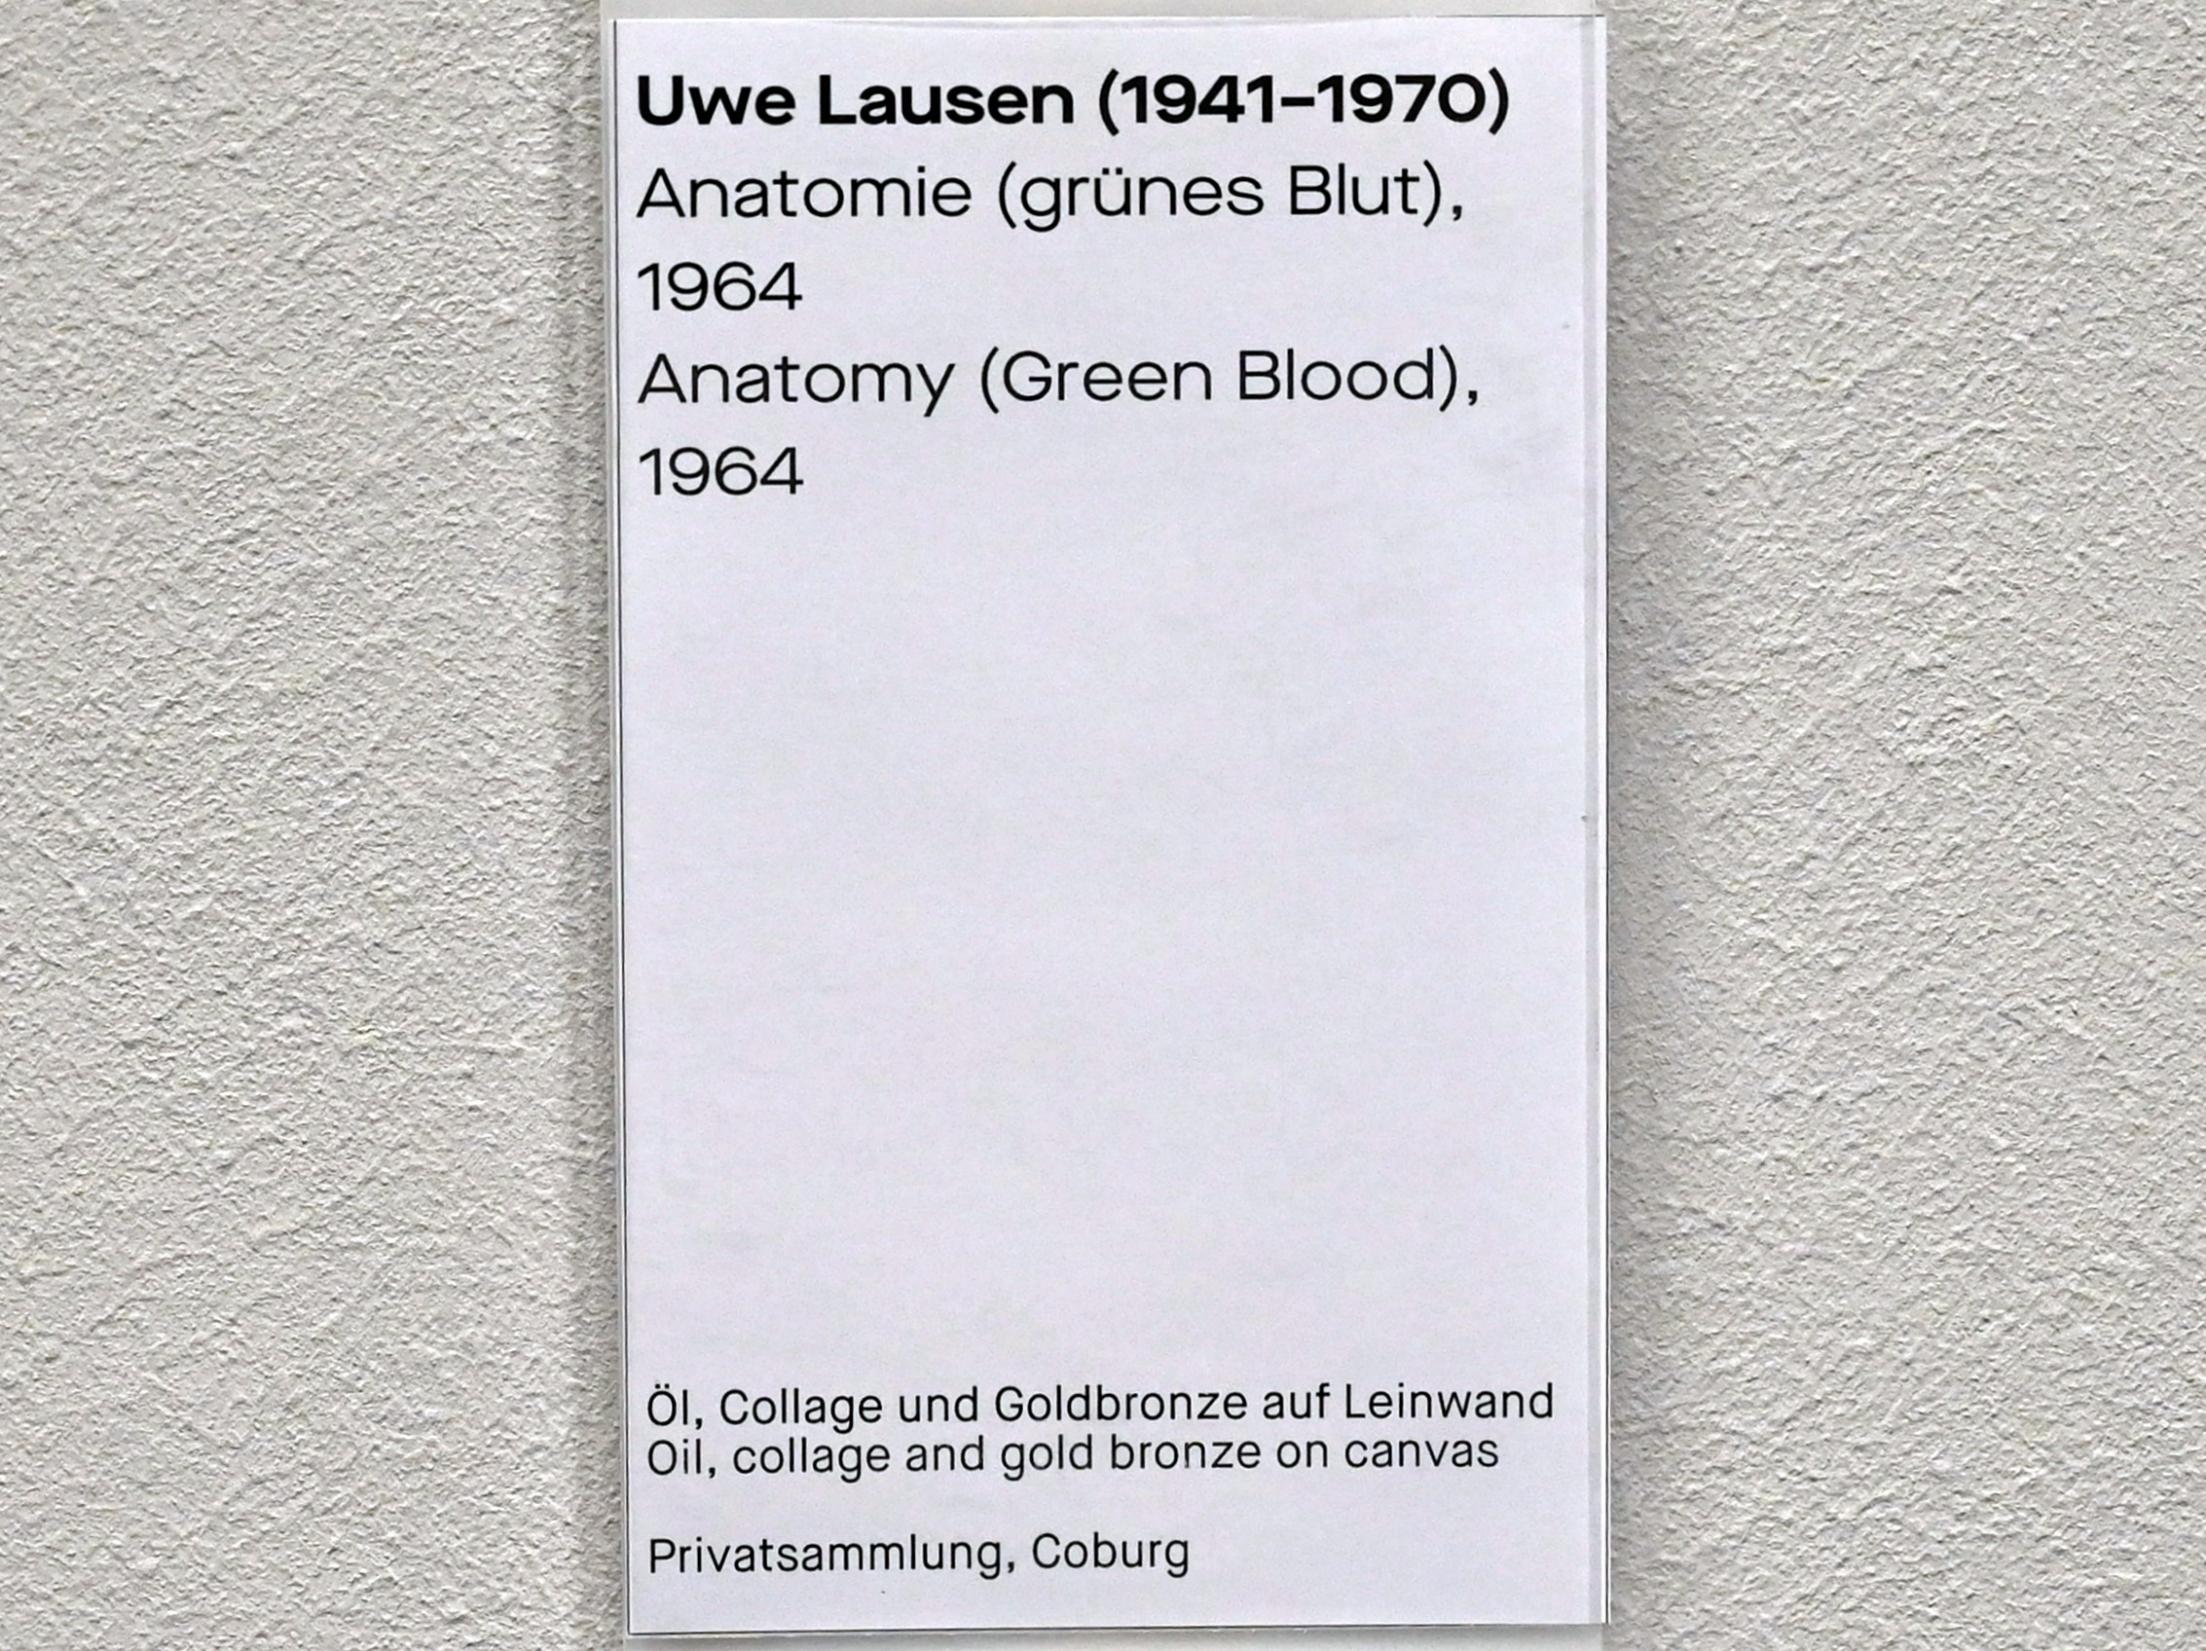 Uwe Lausen (1962–1969), Anatomie (grünes Blut), Chemnitz, Museum Gunzenhauser, Saal 1.3 - Uwe Lausen und Heide Stolz, 1964, Bild 2/2